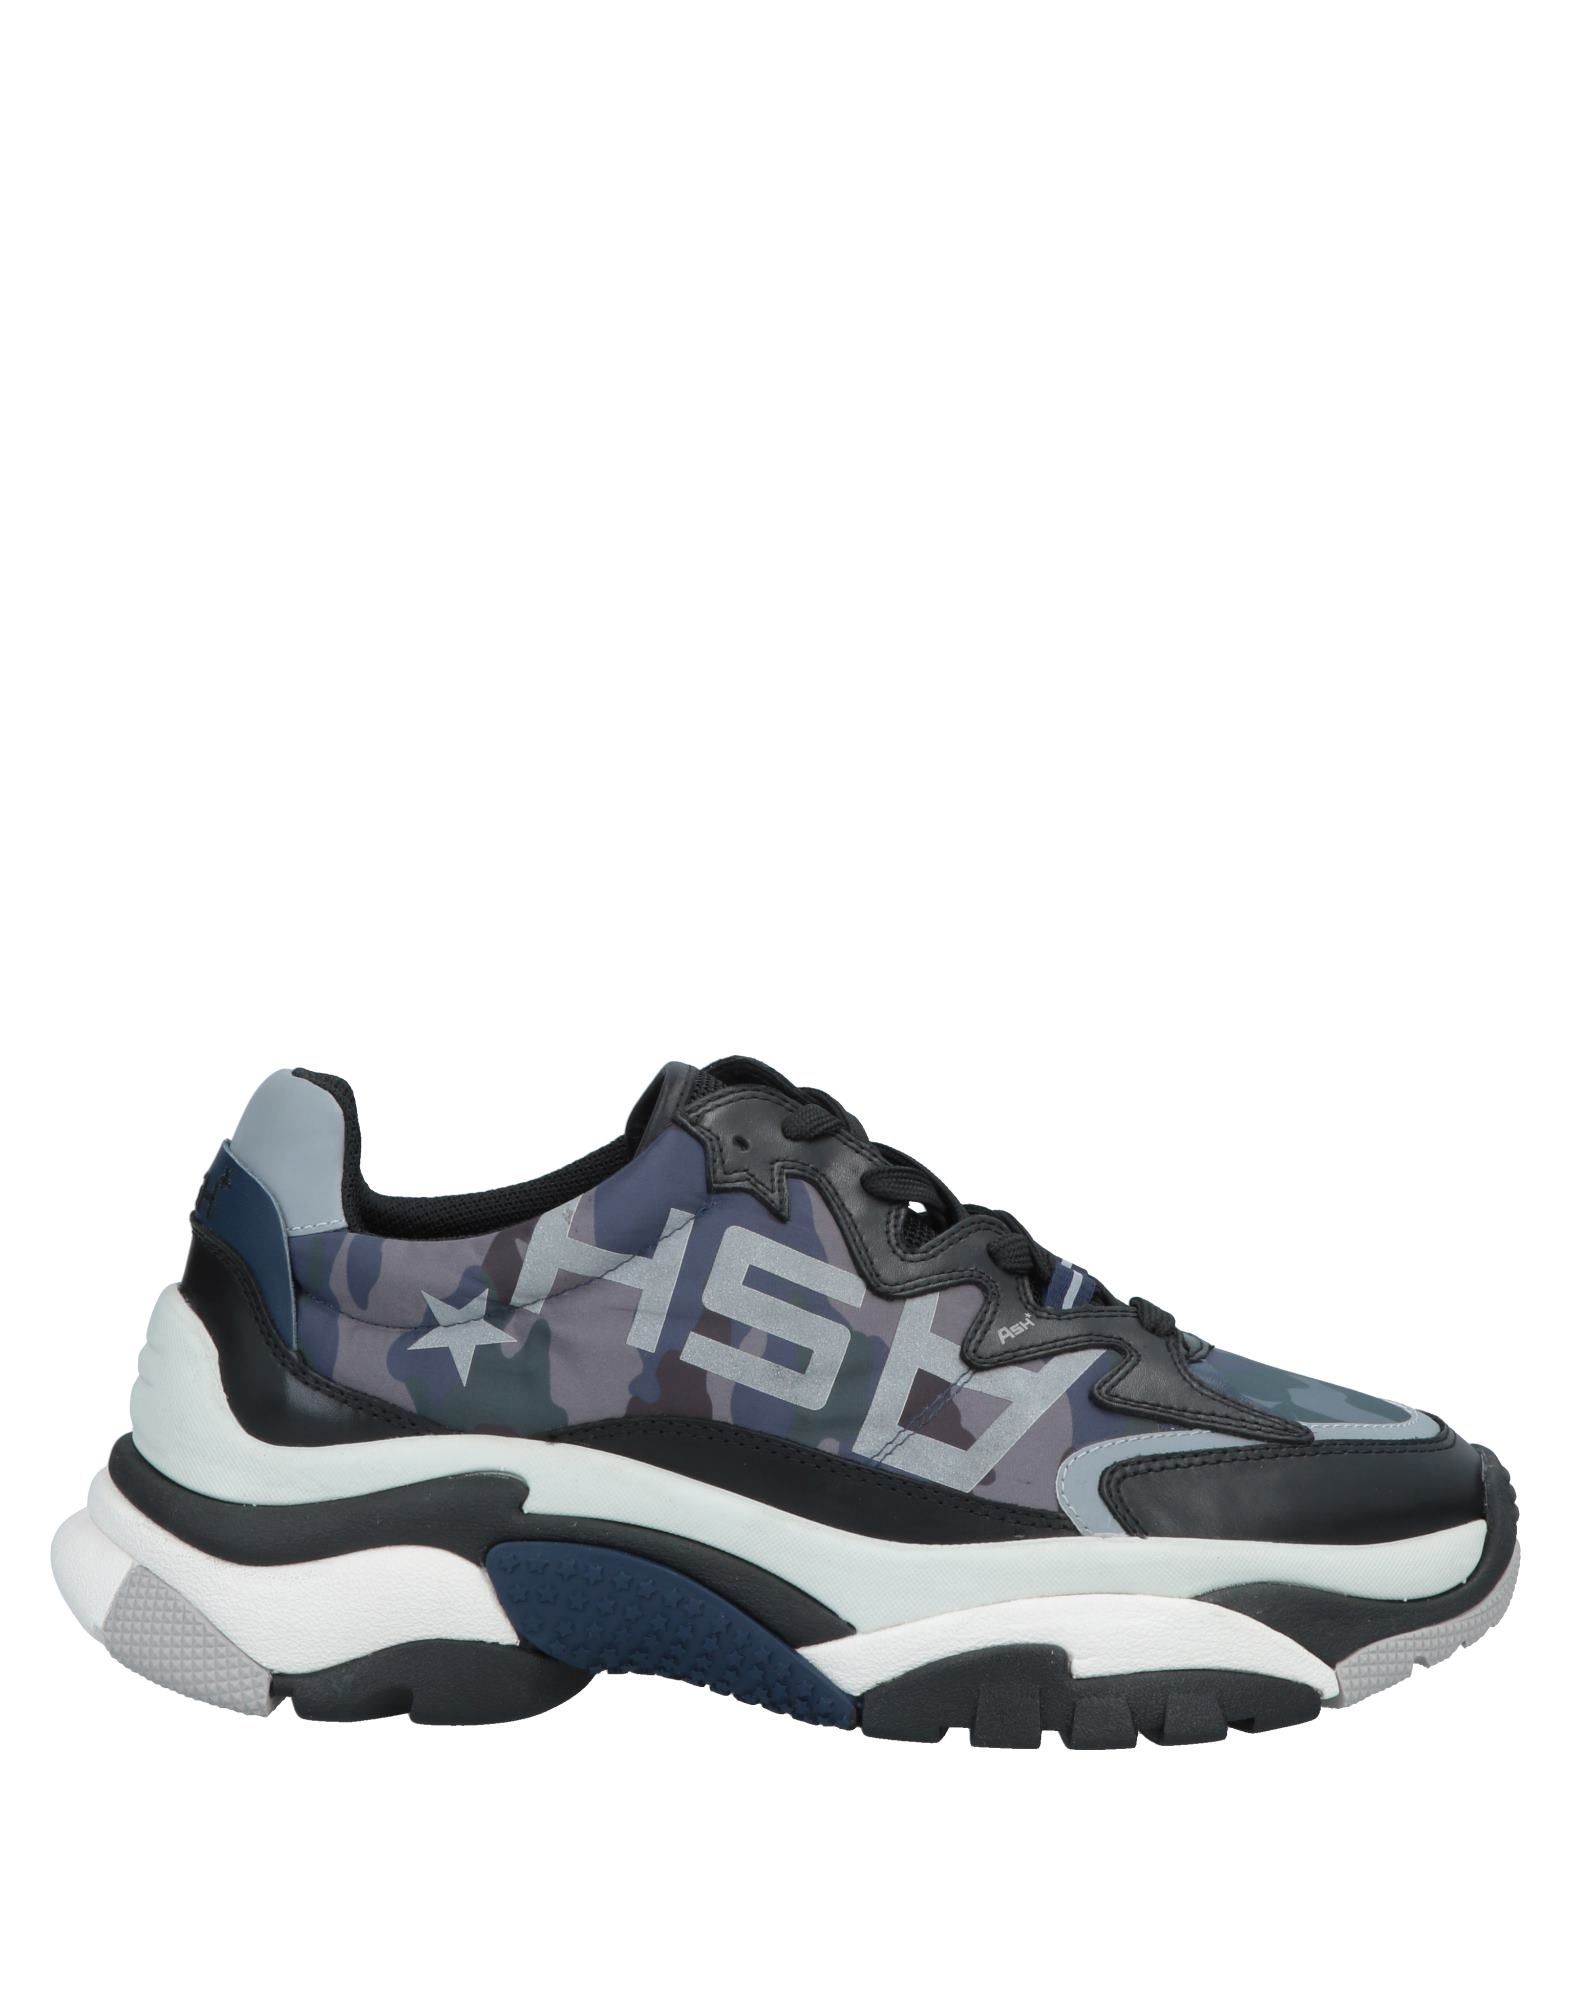 ASH Low-tops & sneakers - Item 11684516